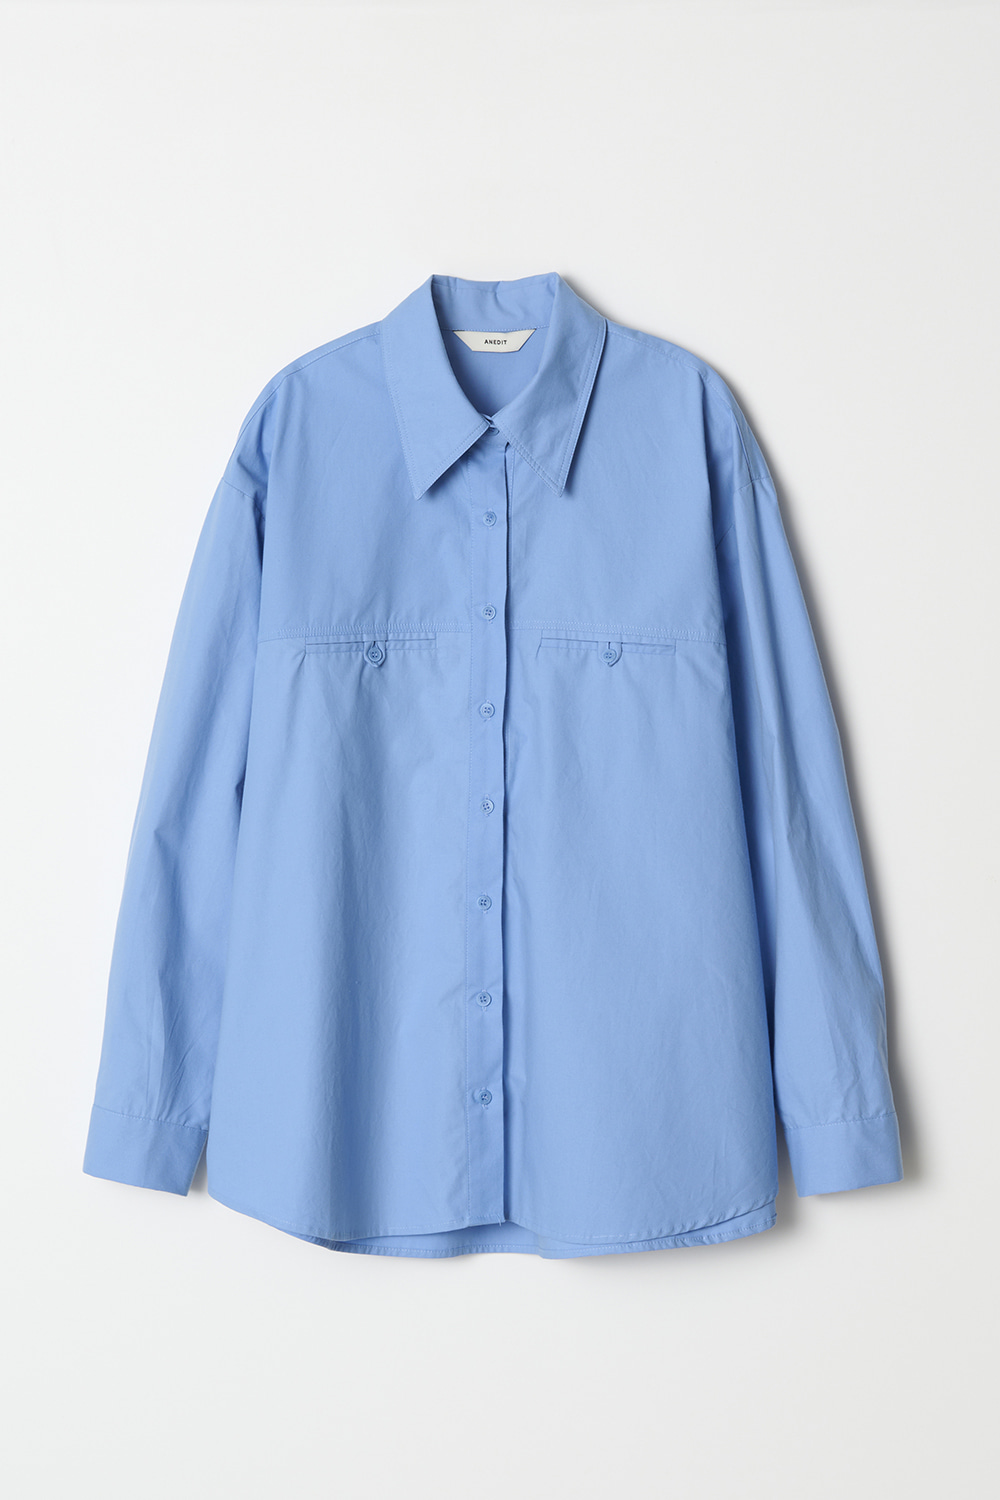 Front Pocket Detail Shirt_Harbor Blue